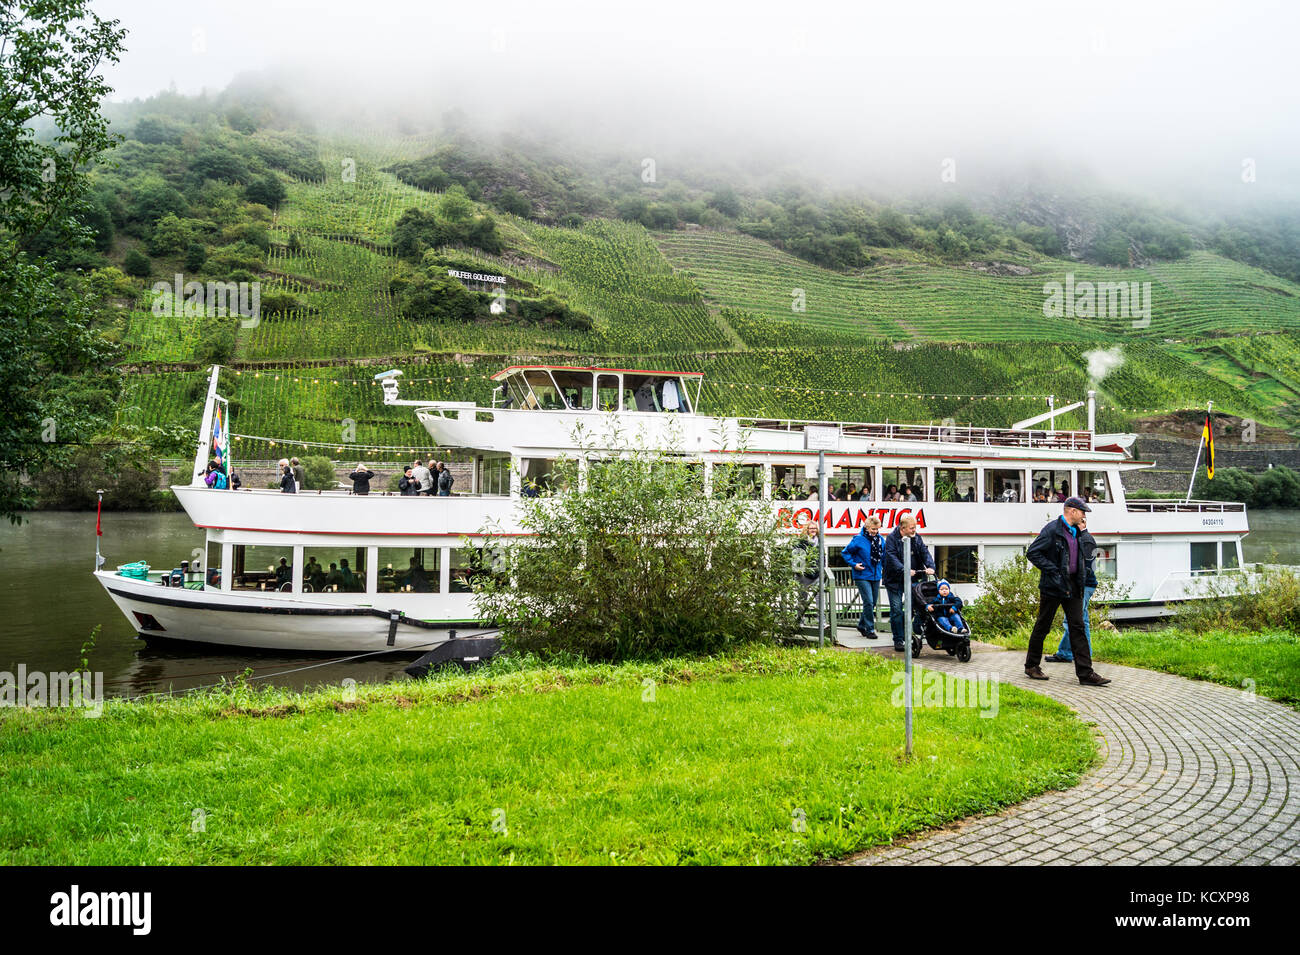 "Romantica" per gite di un giorno in barca il ferry quay nella nebbia, lupo- Traben-Trarbach, la valle di Mosel, Renania-Palatinato, Germania Foto Stock